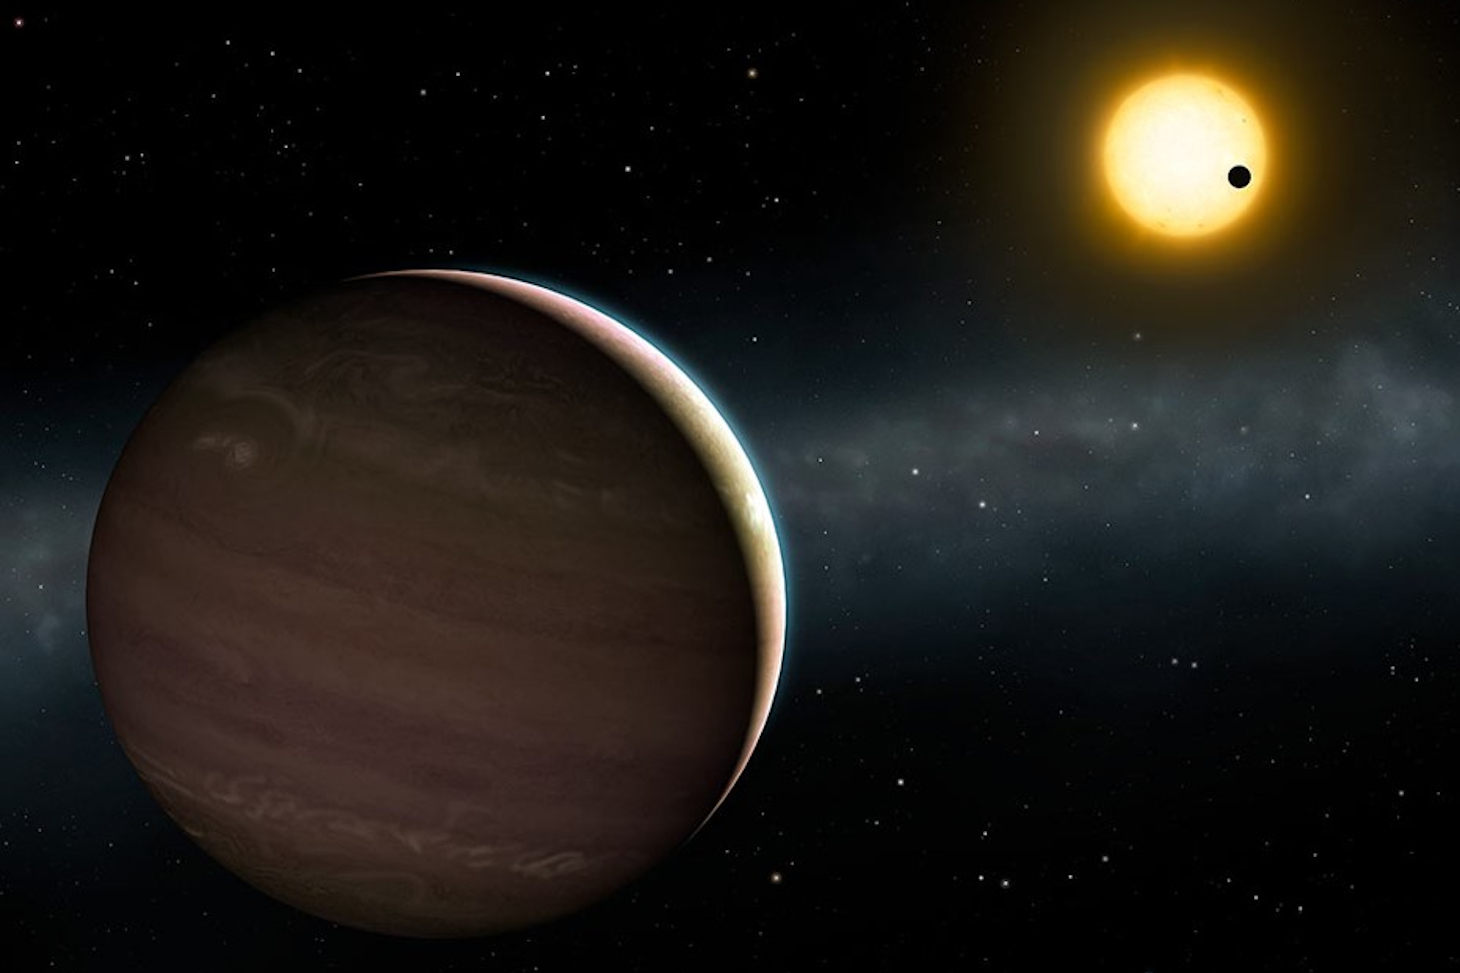 Vue d’artiste du système exoplanétaires en forte interaction WASP-148. La planète WASP-148c est visible au premier plan. On voit au second plan la planète WASP-148b en transit devant l'étoile autour de laquelle les deux planètes sont en orbite. (© Institu